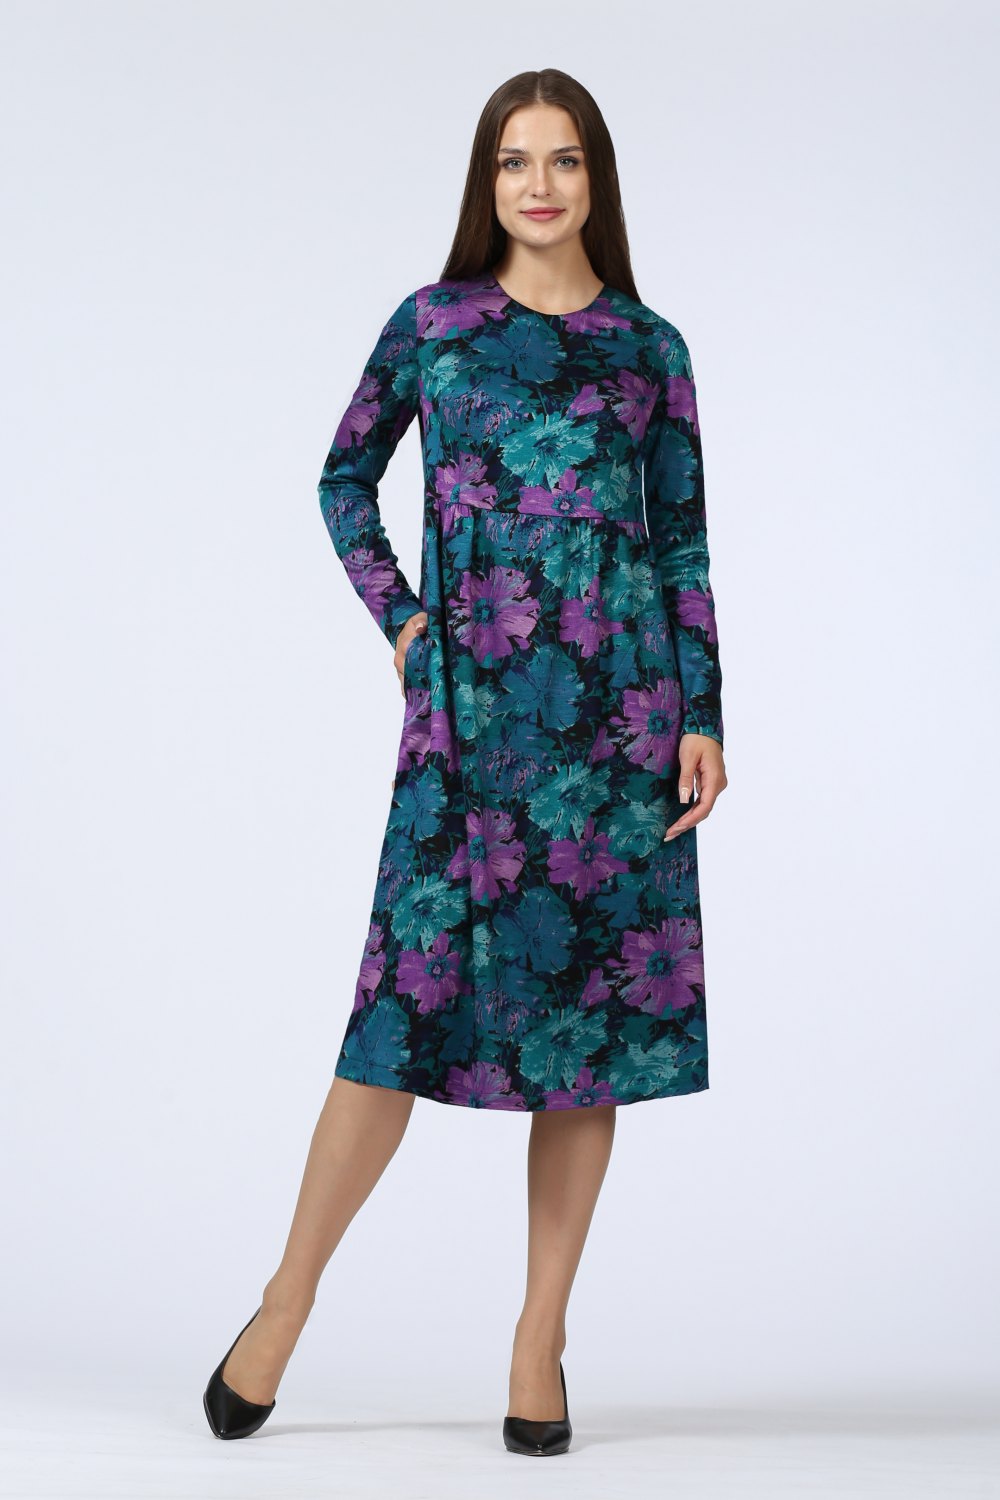 Платье женское " Эдельвейс" модель 628/1 цвет: сиреневые цветы